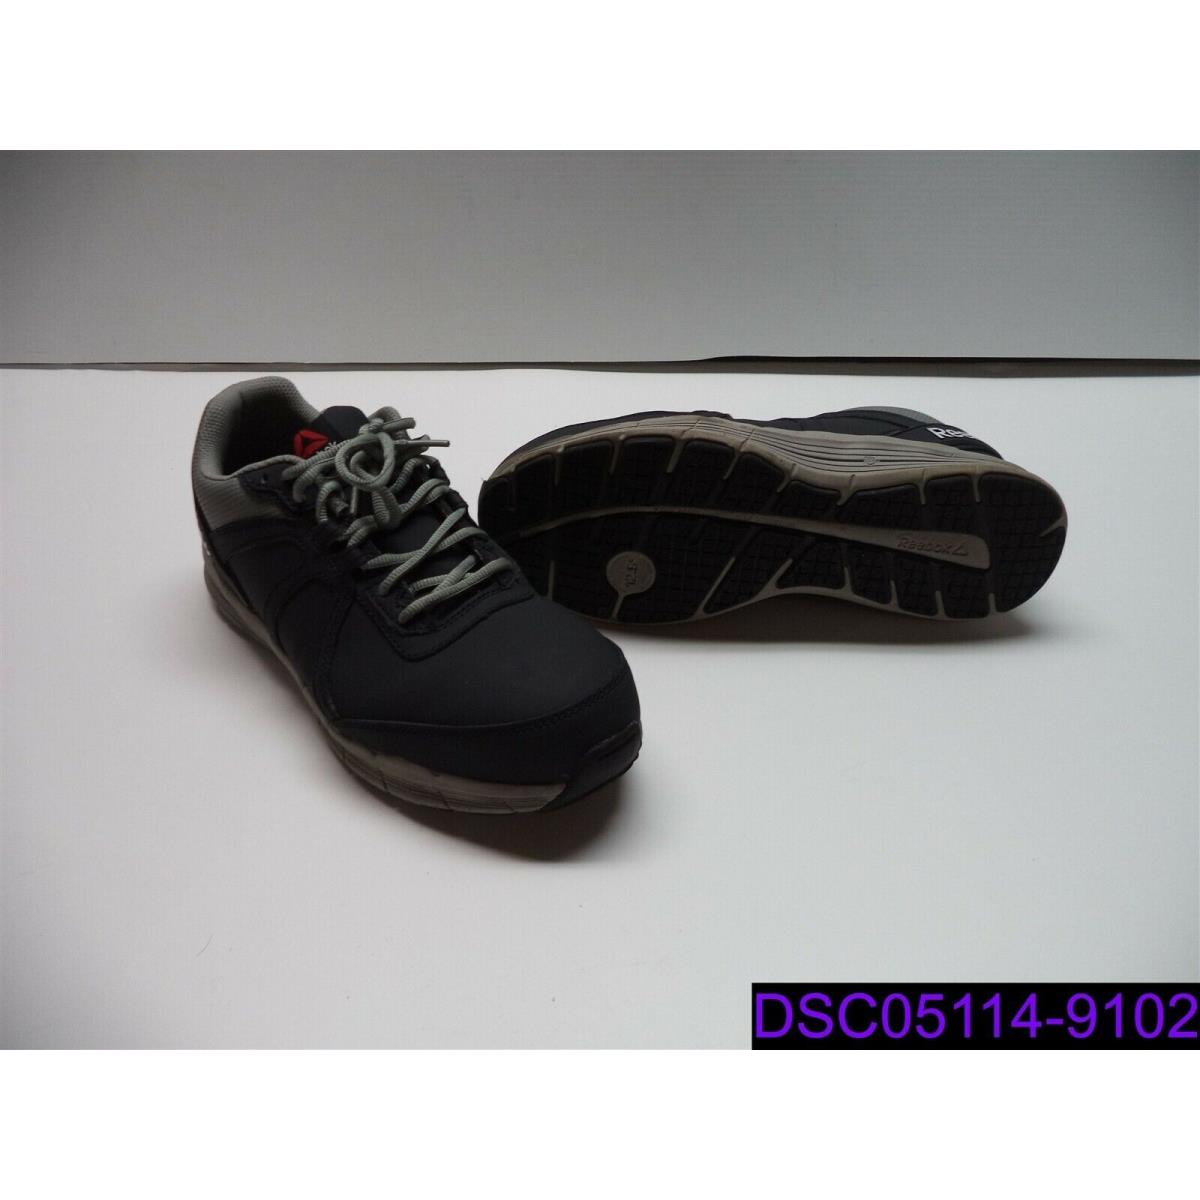 Size 11 Wide Men Shoe Reebok Guide Work Steel Safety Toe Blue RB3502